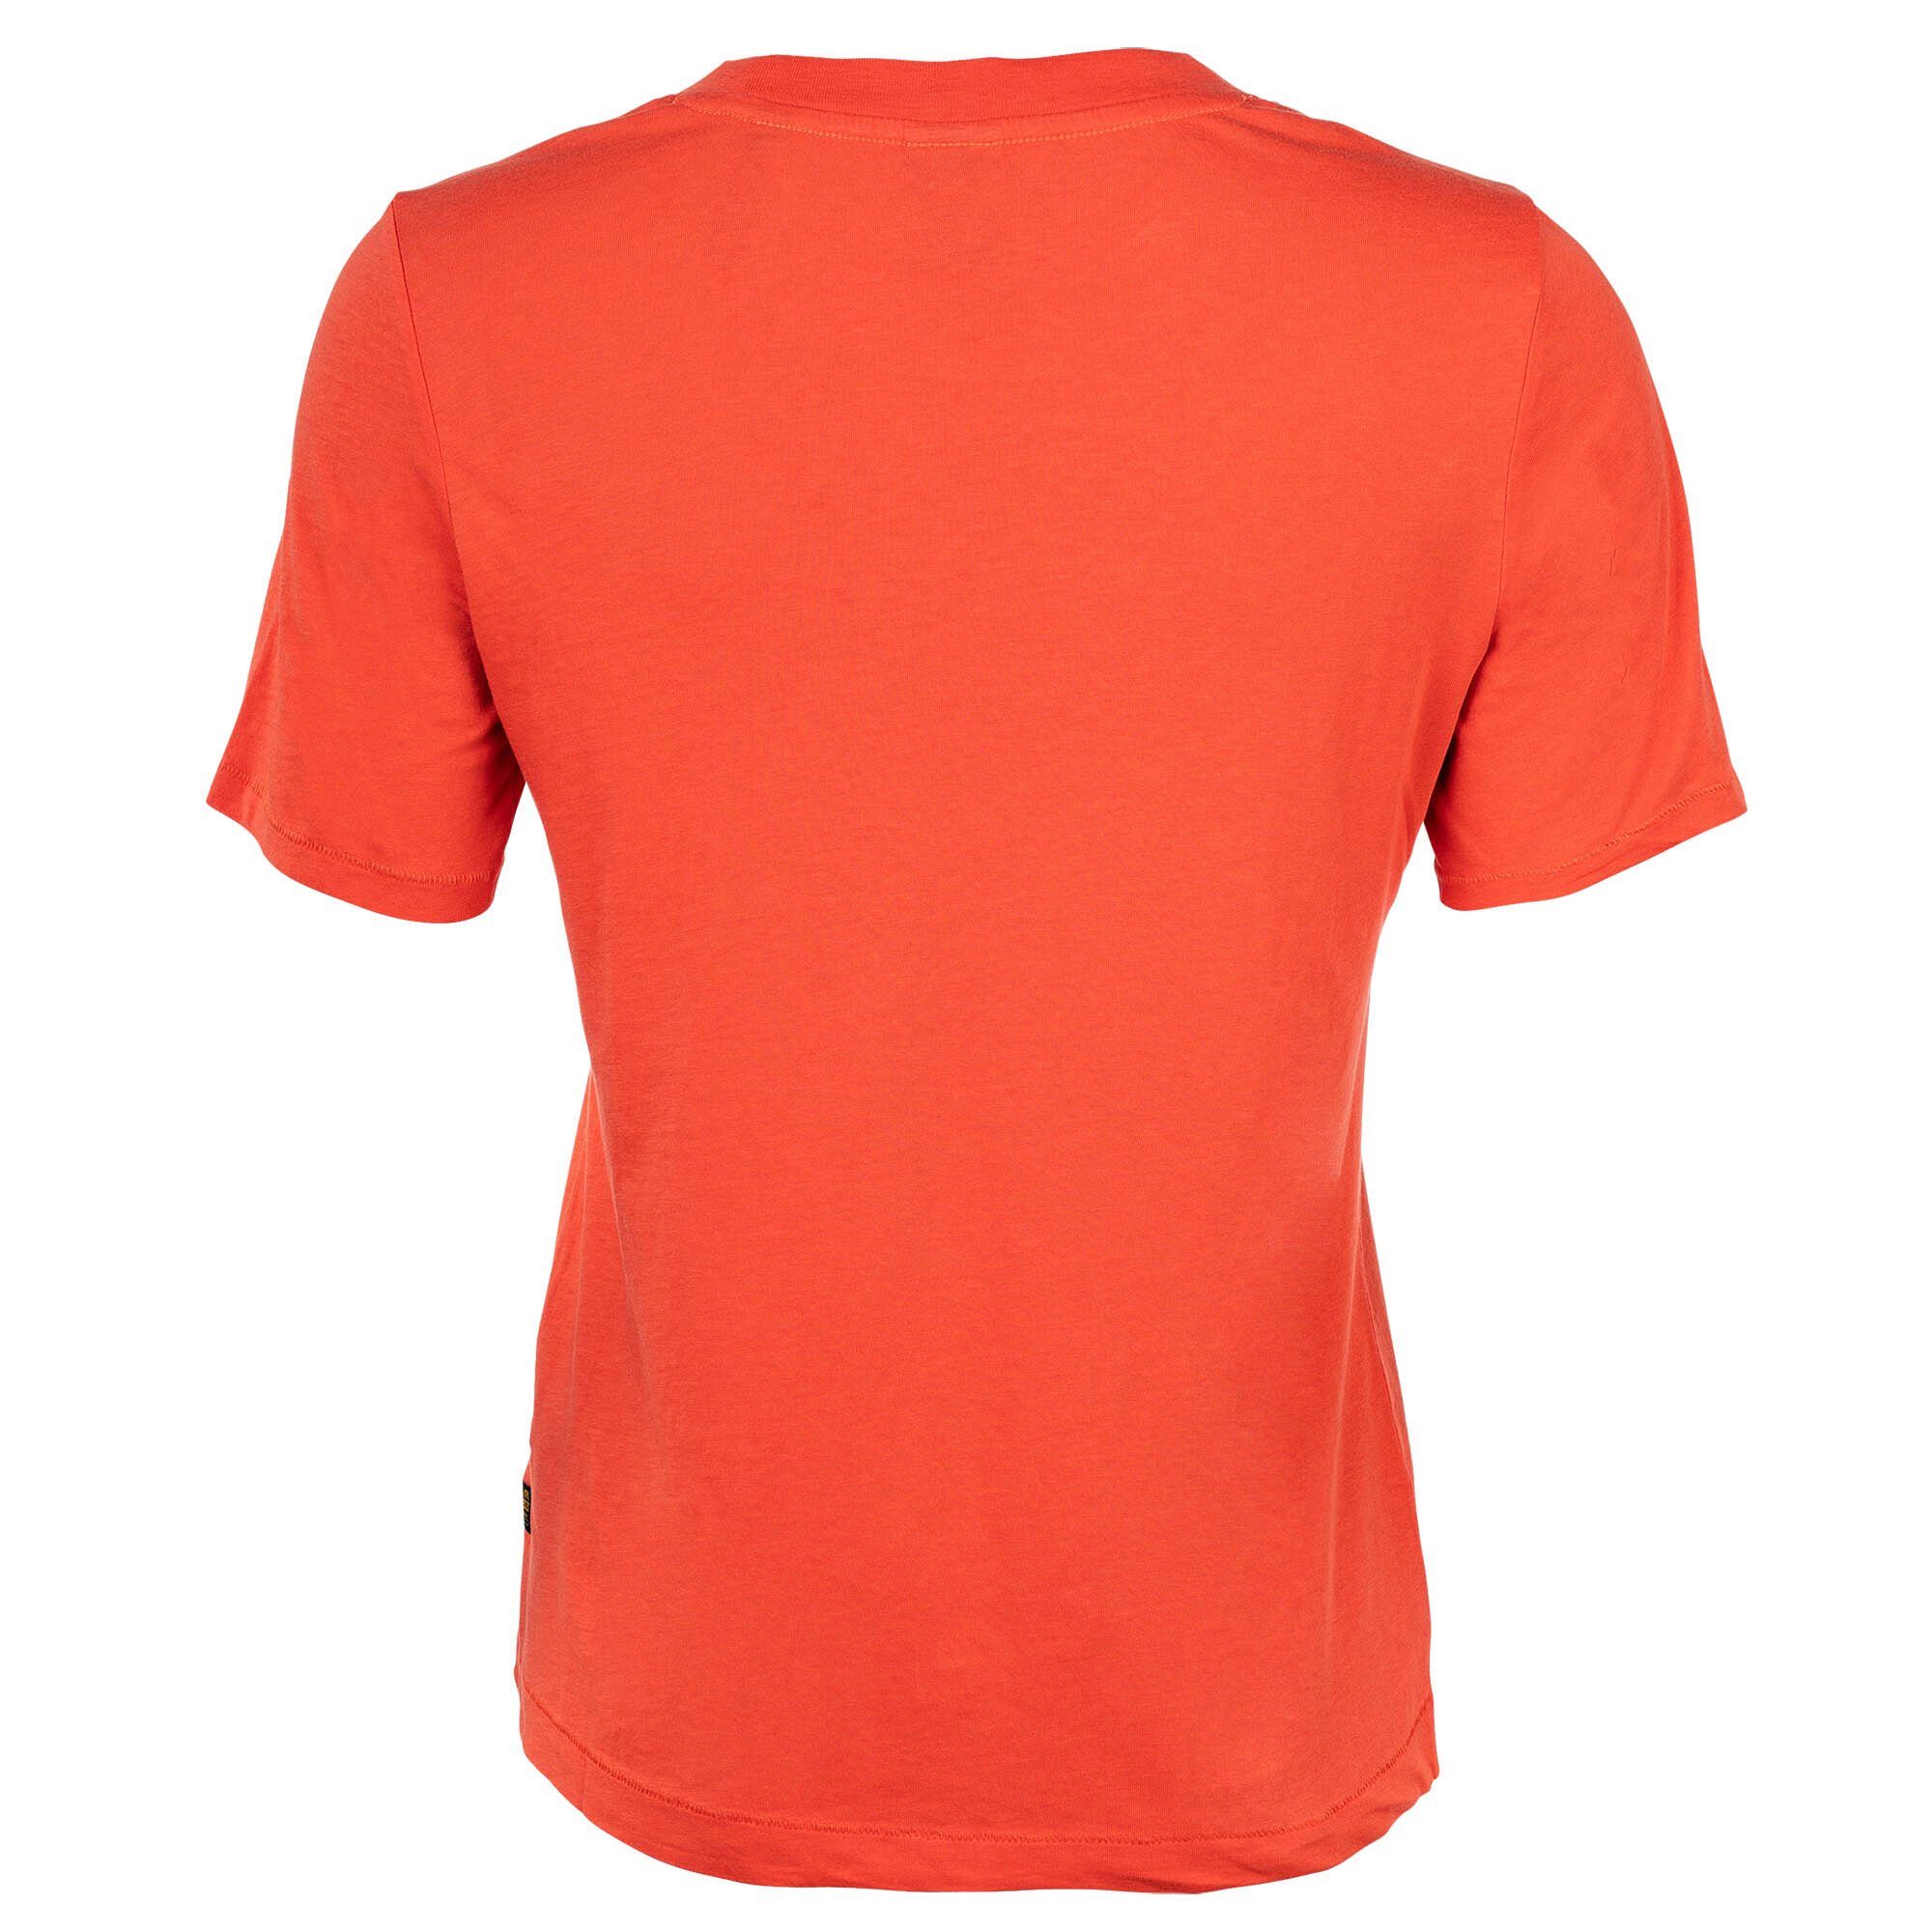 G-Star RAW T-Shirt Damen T-Shirt Rot Label - Originals Fit Regular